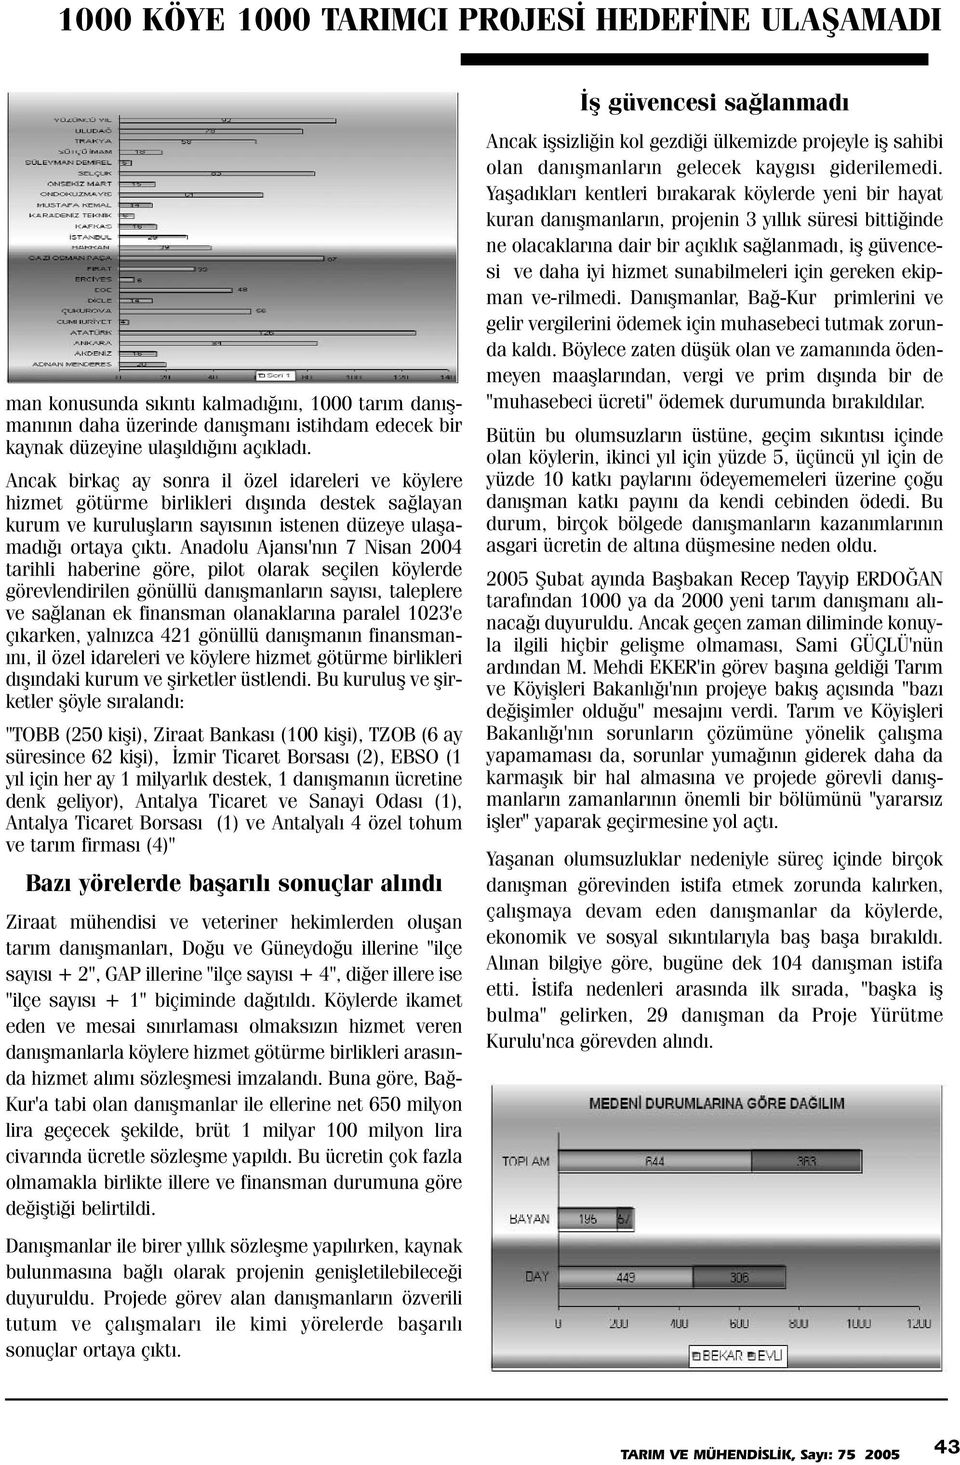 Anadolu Ajansý'nýn 7 Nisan 2004 tarihli haberine göre, pilot olarak seçilen köylerde görevlendirilen gönüllü danýþmanlarýn sayýsý, taleplere ve saðlanan ek finansman olanaklarýna paralel 1023'e